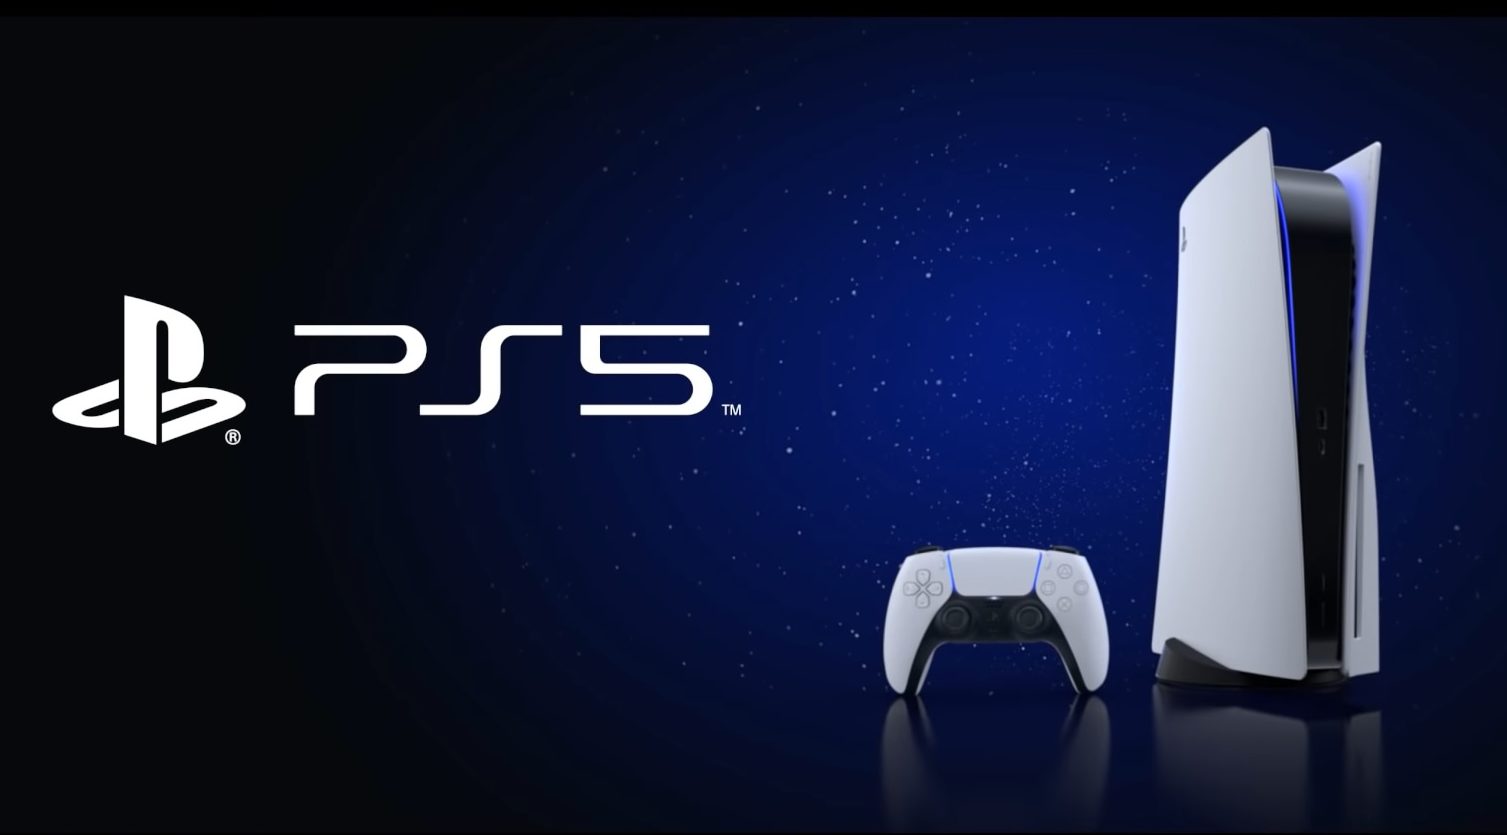 A pré-venda do PlayStation 5 superou as vendas de seu antecessor. O PS5 já vendeu em 12 horas o equivalente às 12 primeiras semanas do PS4